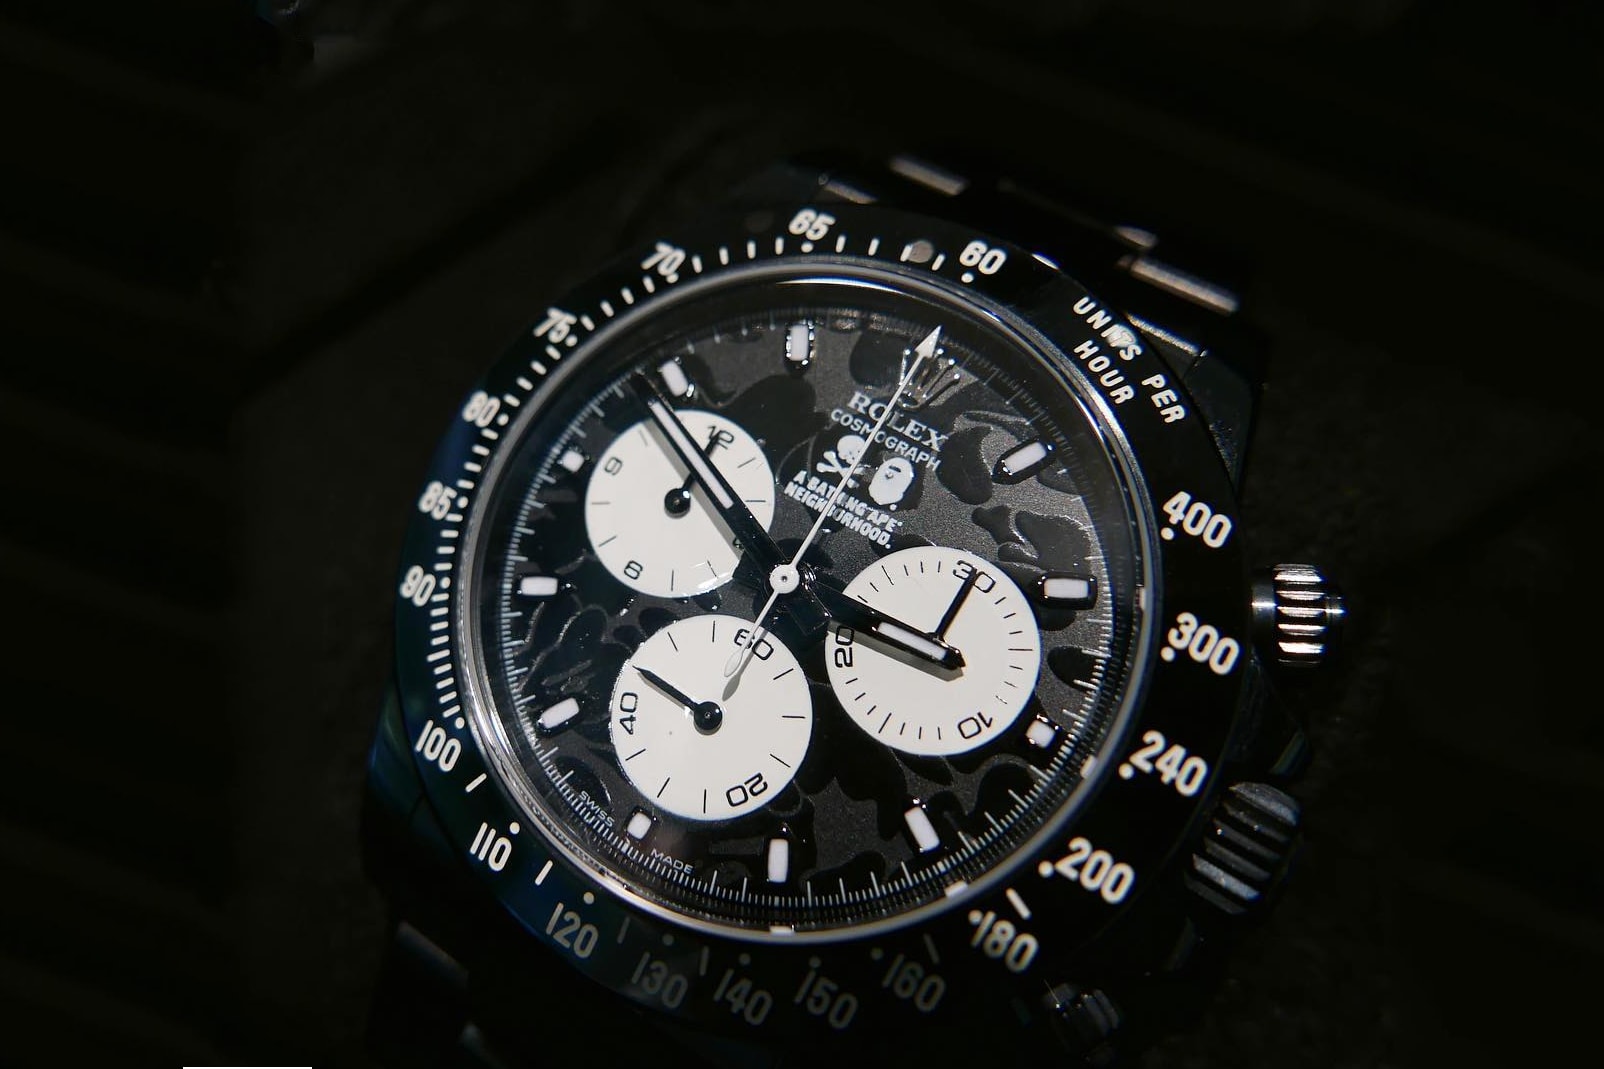 BAPE x NEIGHBORHOOD x Bamford Watch Department Rolex Watches Timepieces A Bathing Ape